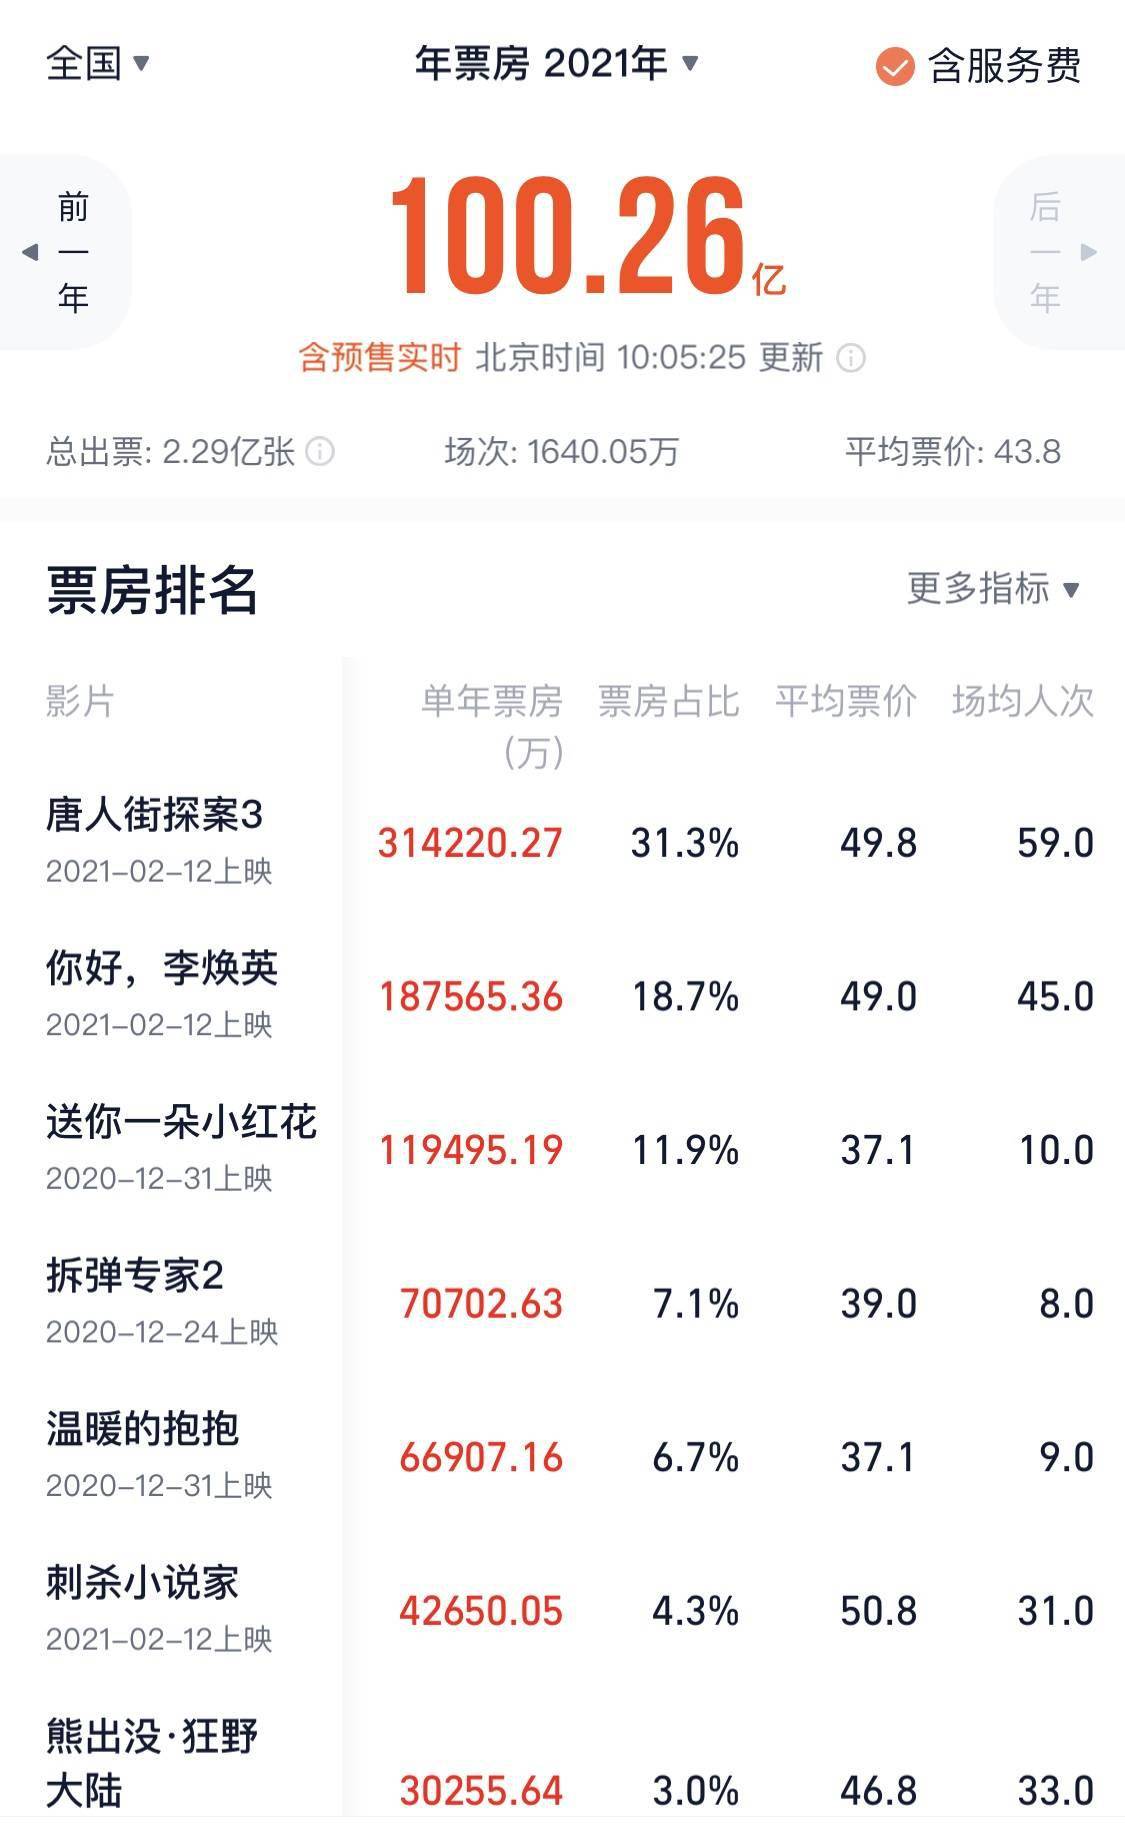 中国电影市场 2021 年度总票房(含预售)突破 100 亿元